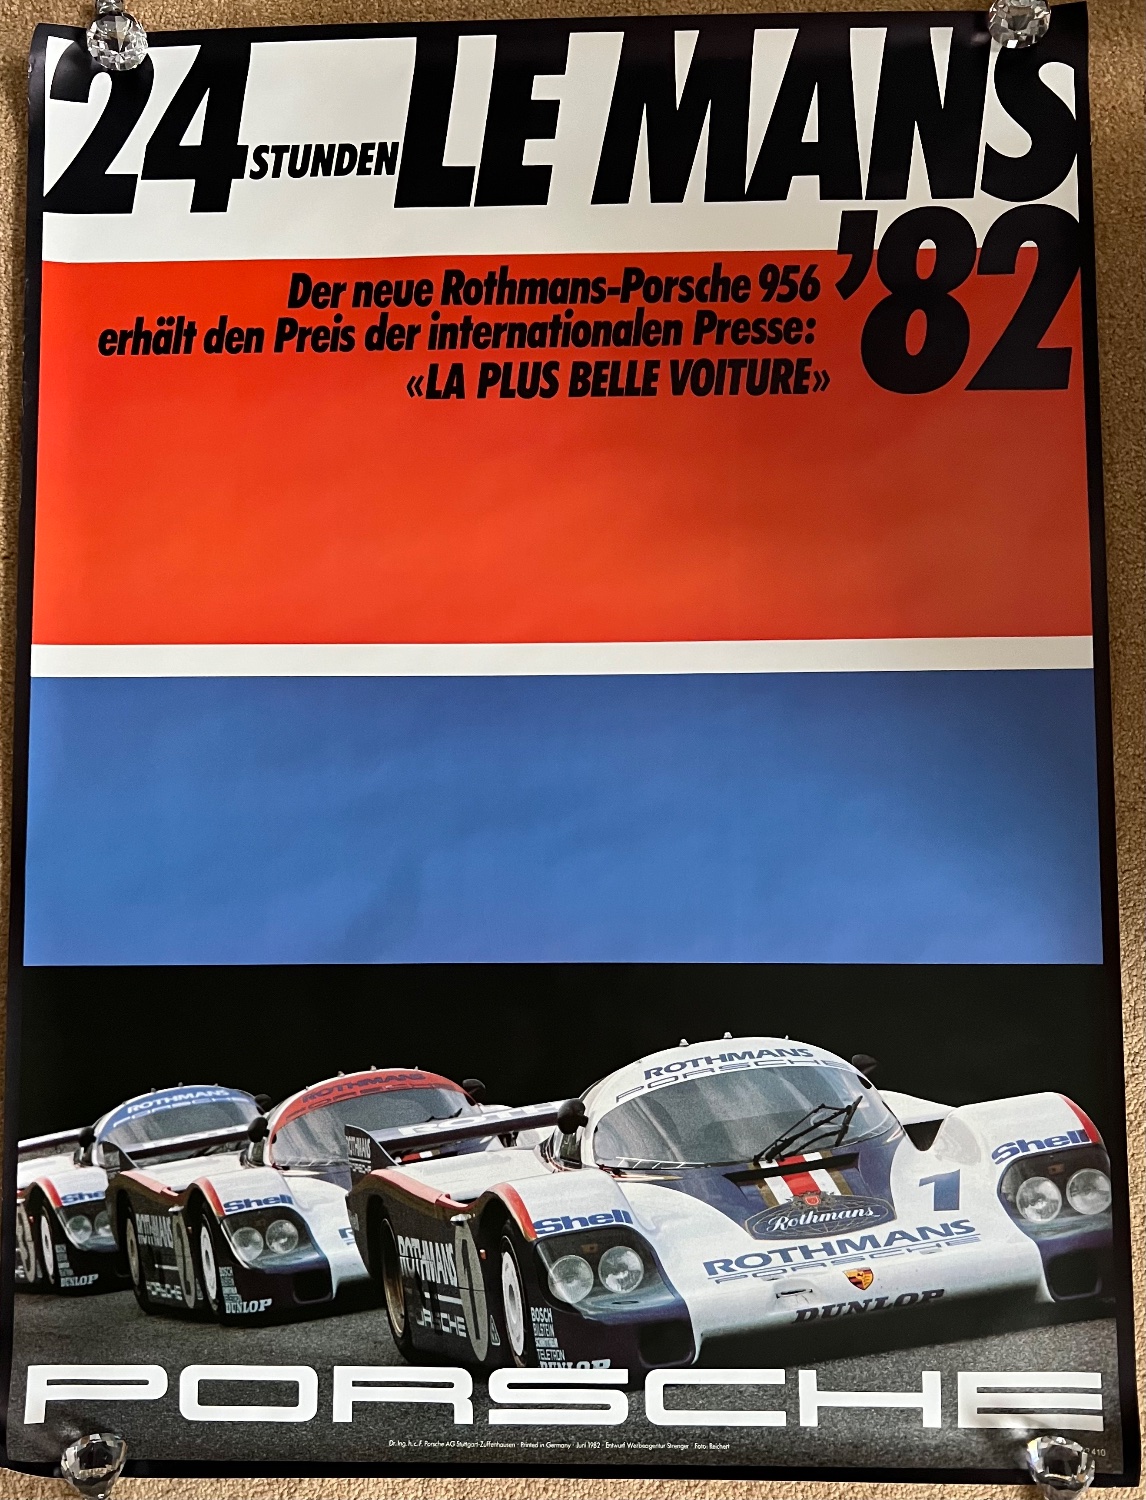 indlysende gennemse Intermediate Original 1982 Le Mans Porsche factory poster V1 :: 24 Heures du Mans